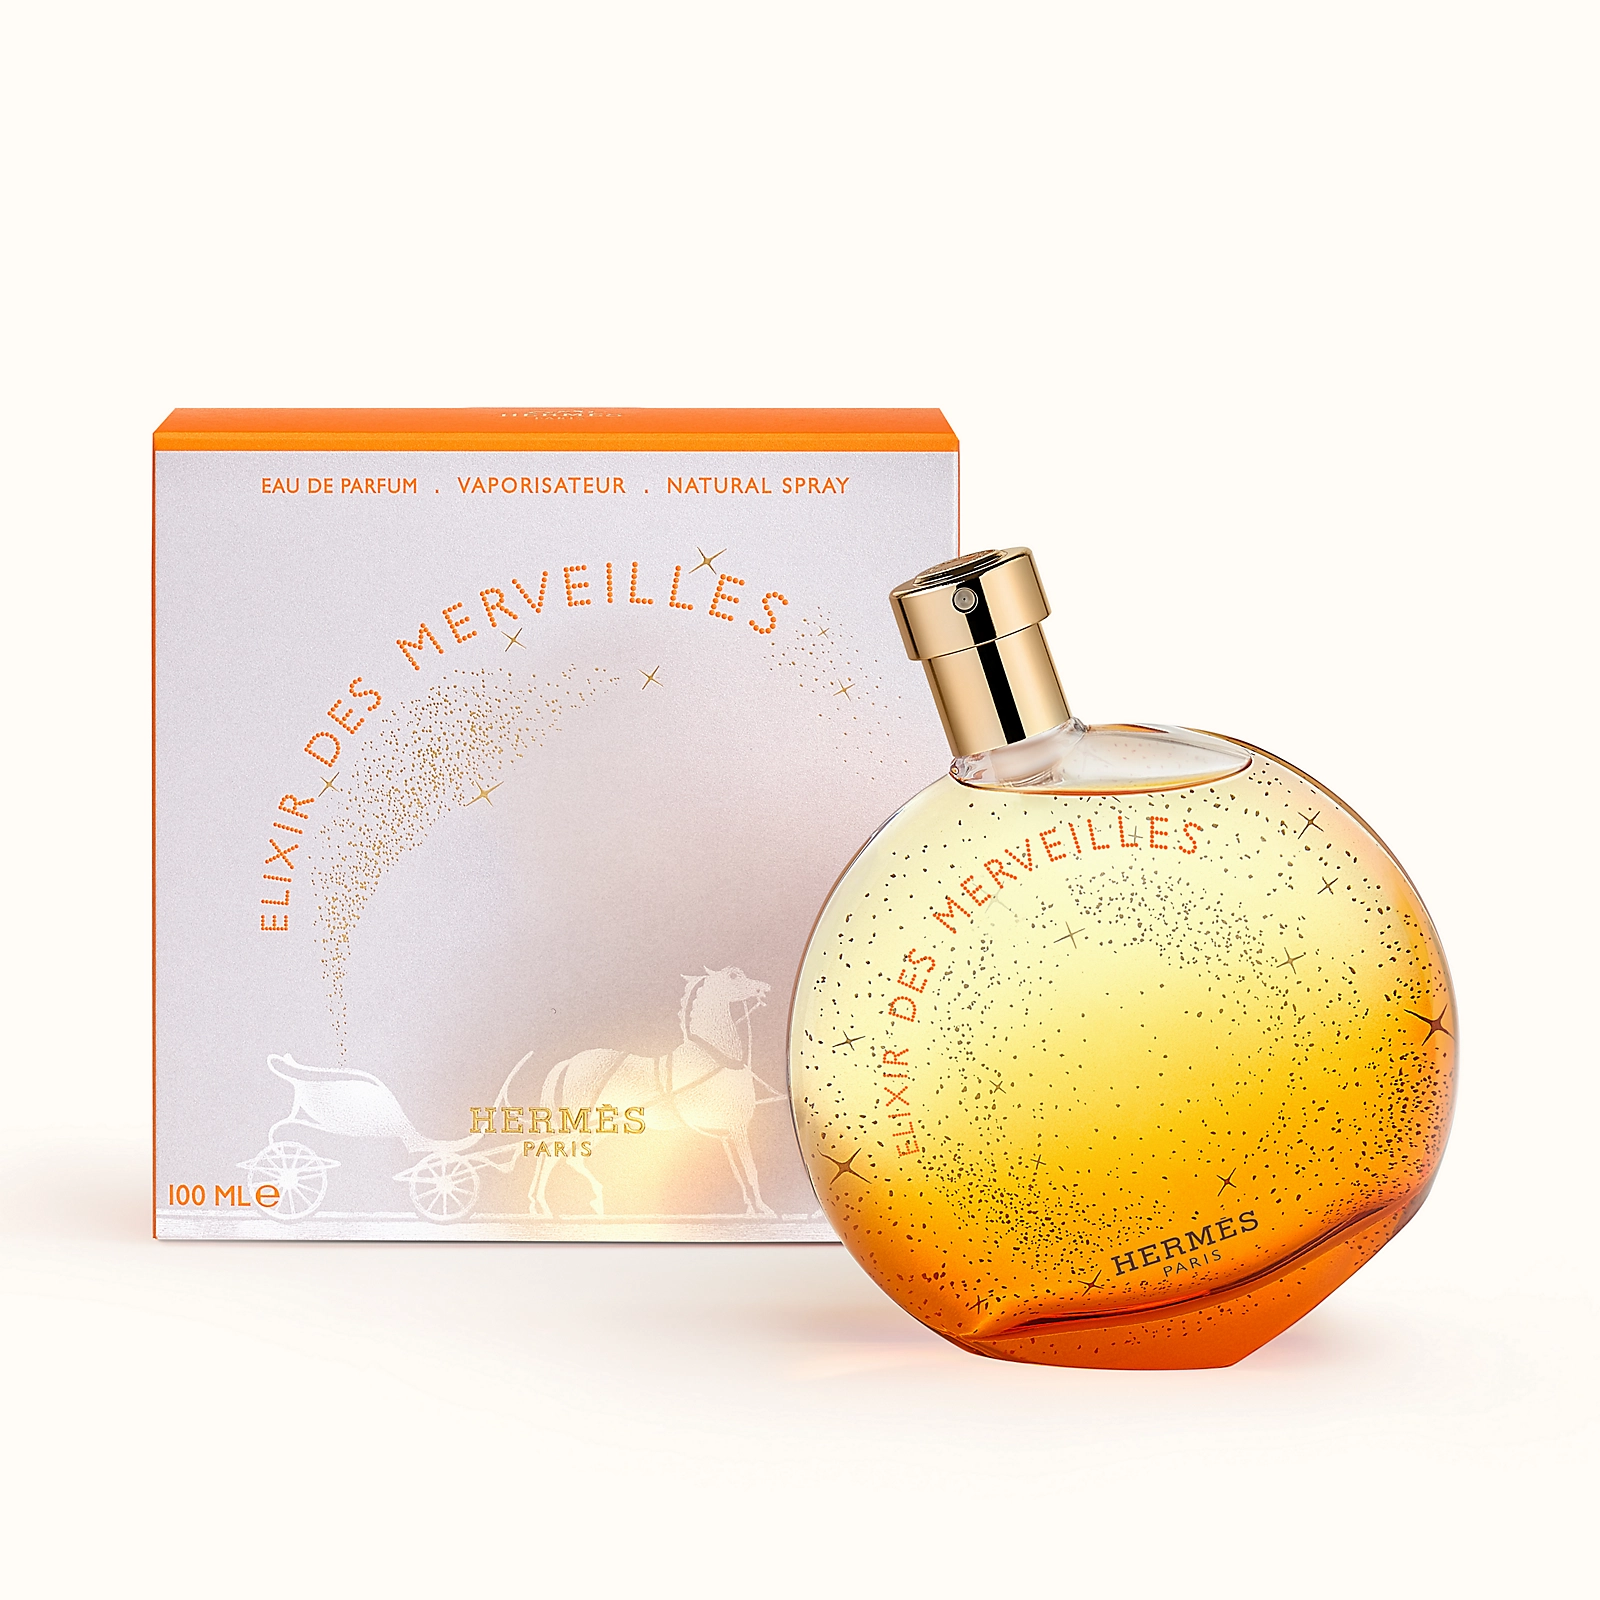 ادکلن هرمس الکسیر دس مرولیس 100میل Elixir des Merveilles Eau de parfum (3)